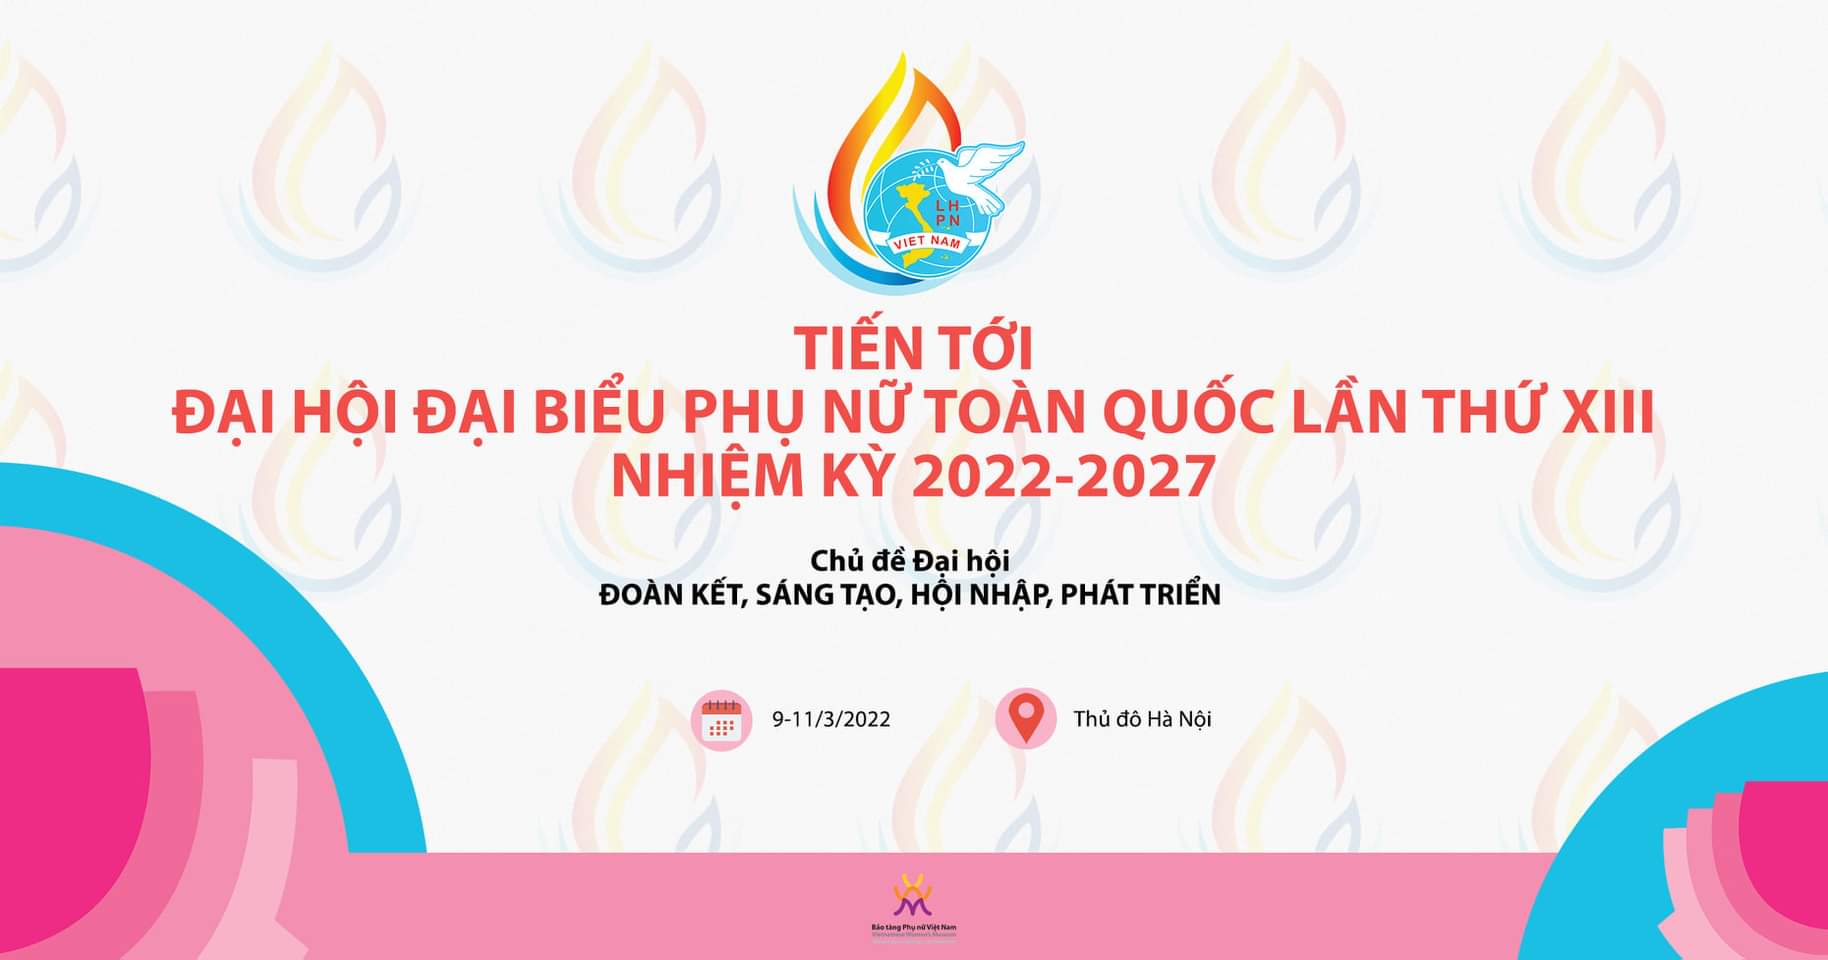 Hội Liên hiệp Phụ nữ Việt Nam - Các kỳ Đại hội Đại biểu Phụ nữ toàn quốc - Bảo tàng Phụ Nữ Việt Nam